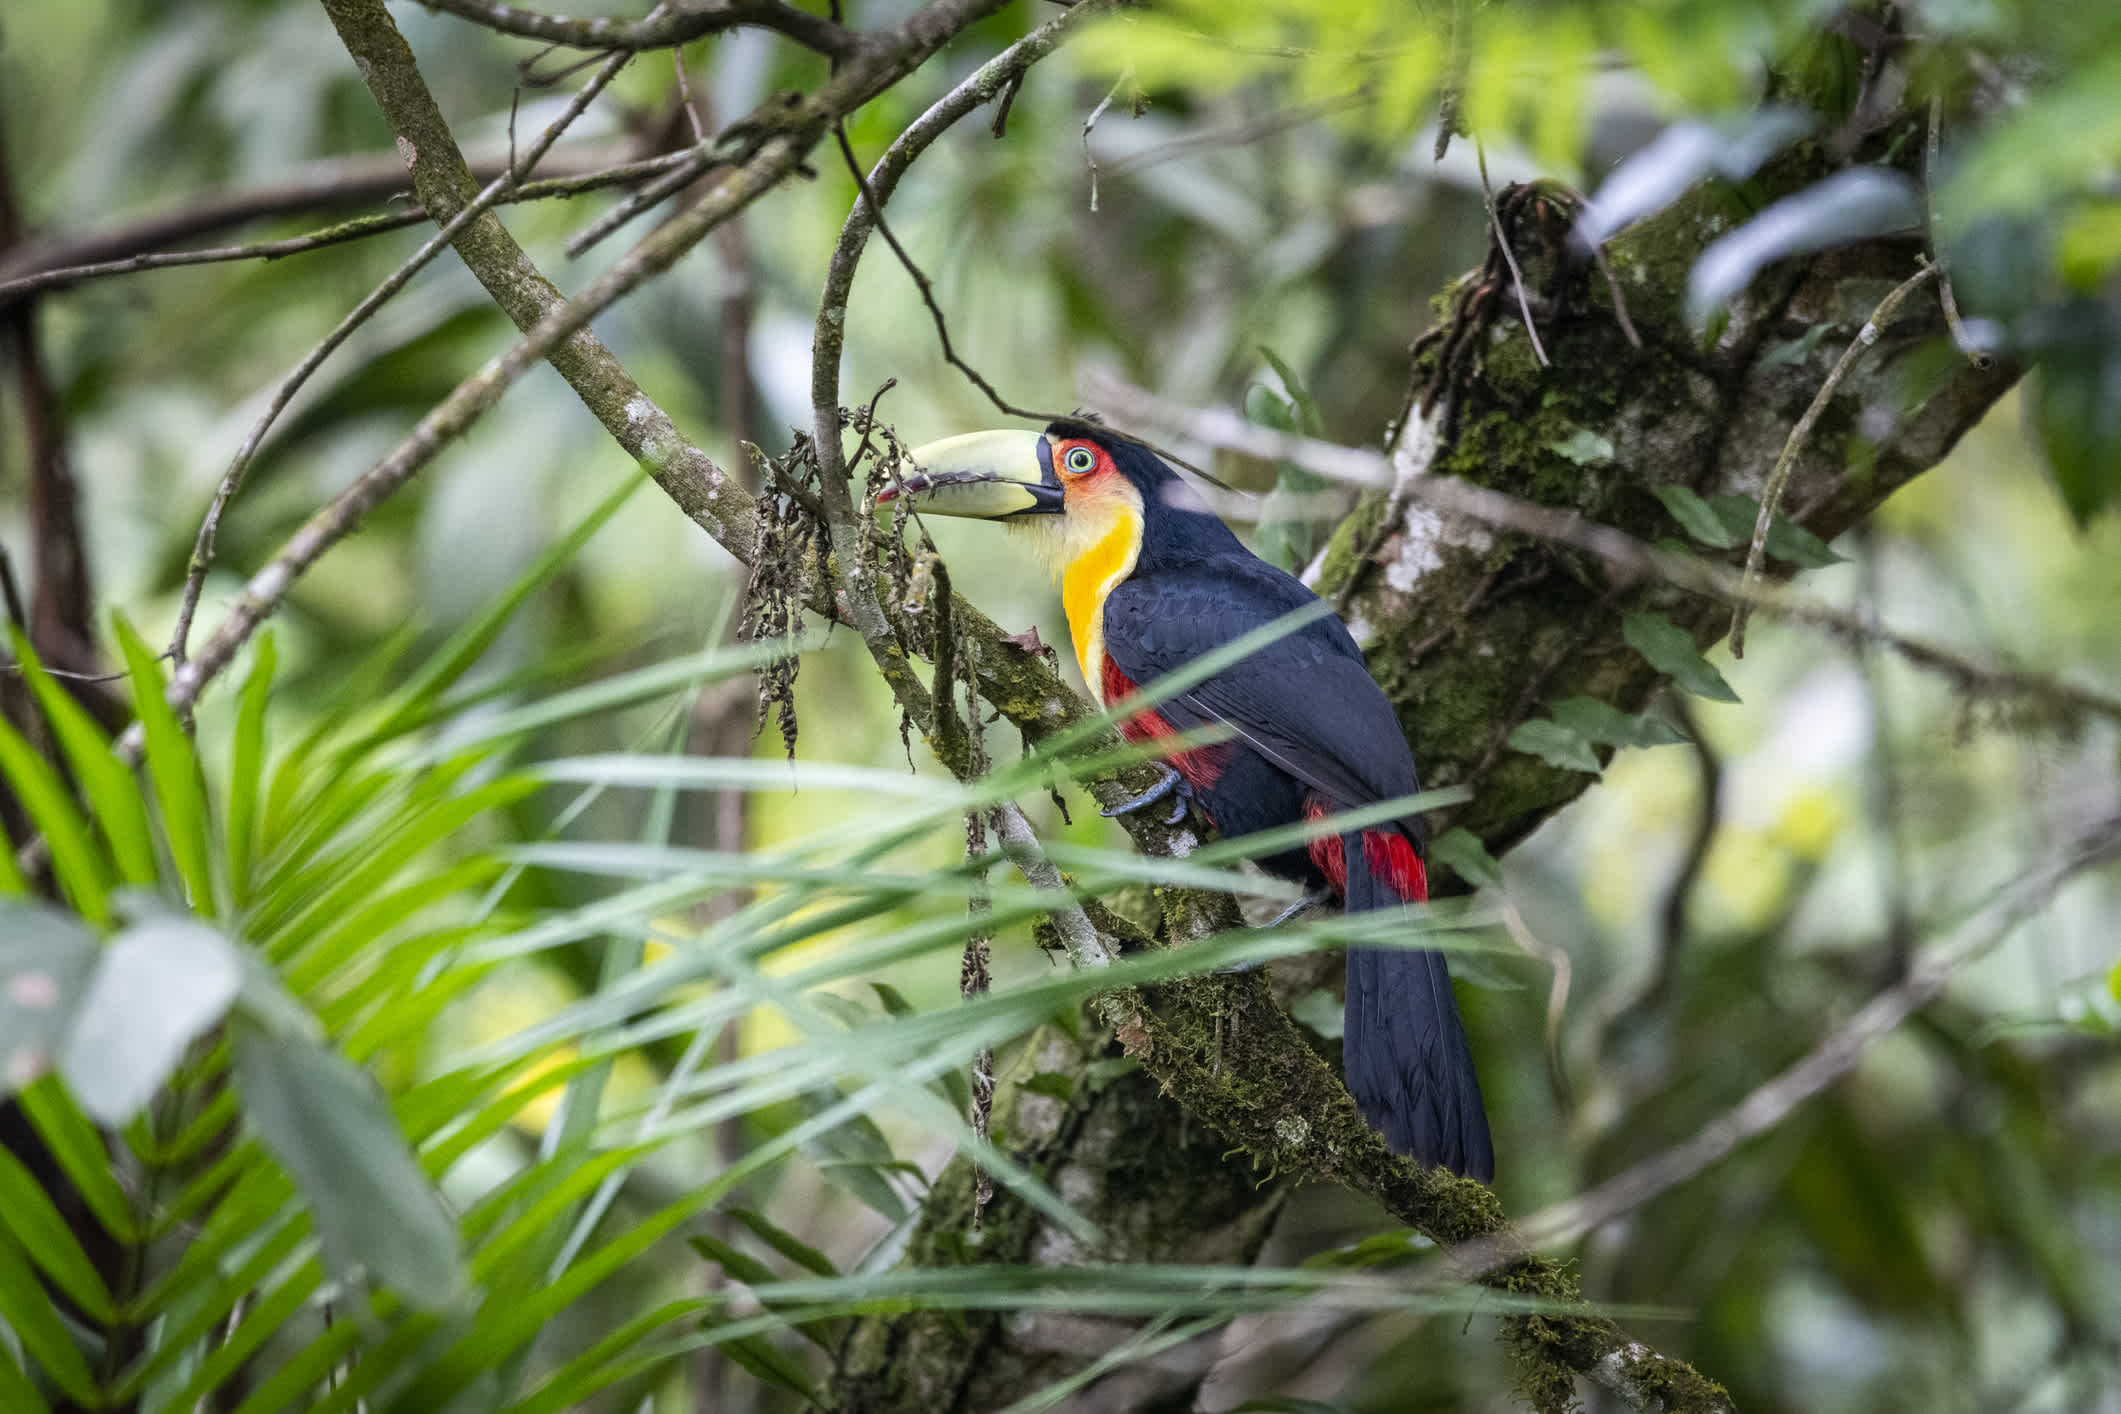 Bunter tropischer Vogel in Penedo, Rio de Janeiro, Brasilien.

